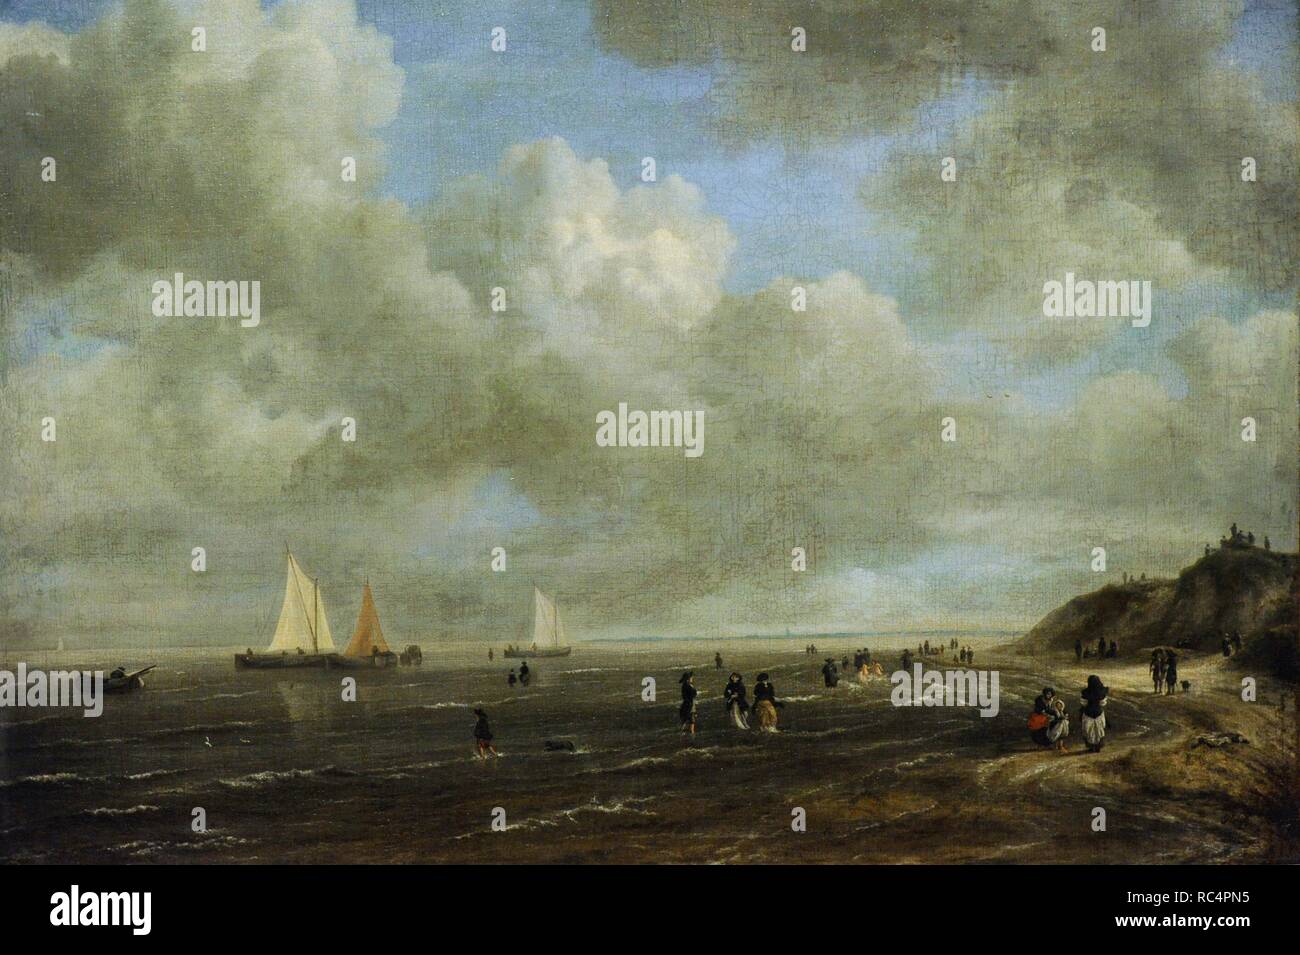 Jacob van Ruysdael (c.1628-1682). Pintor holandés. Seashore, finales de 1660-principios de 1670s. El Museo Estatal del Hermitage. San Petersburgo. Rusia. Foto de stock